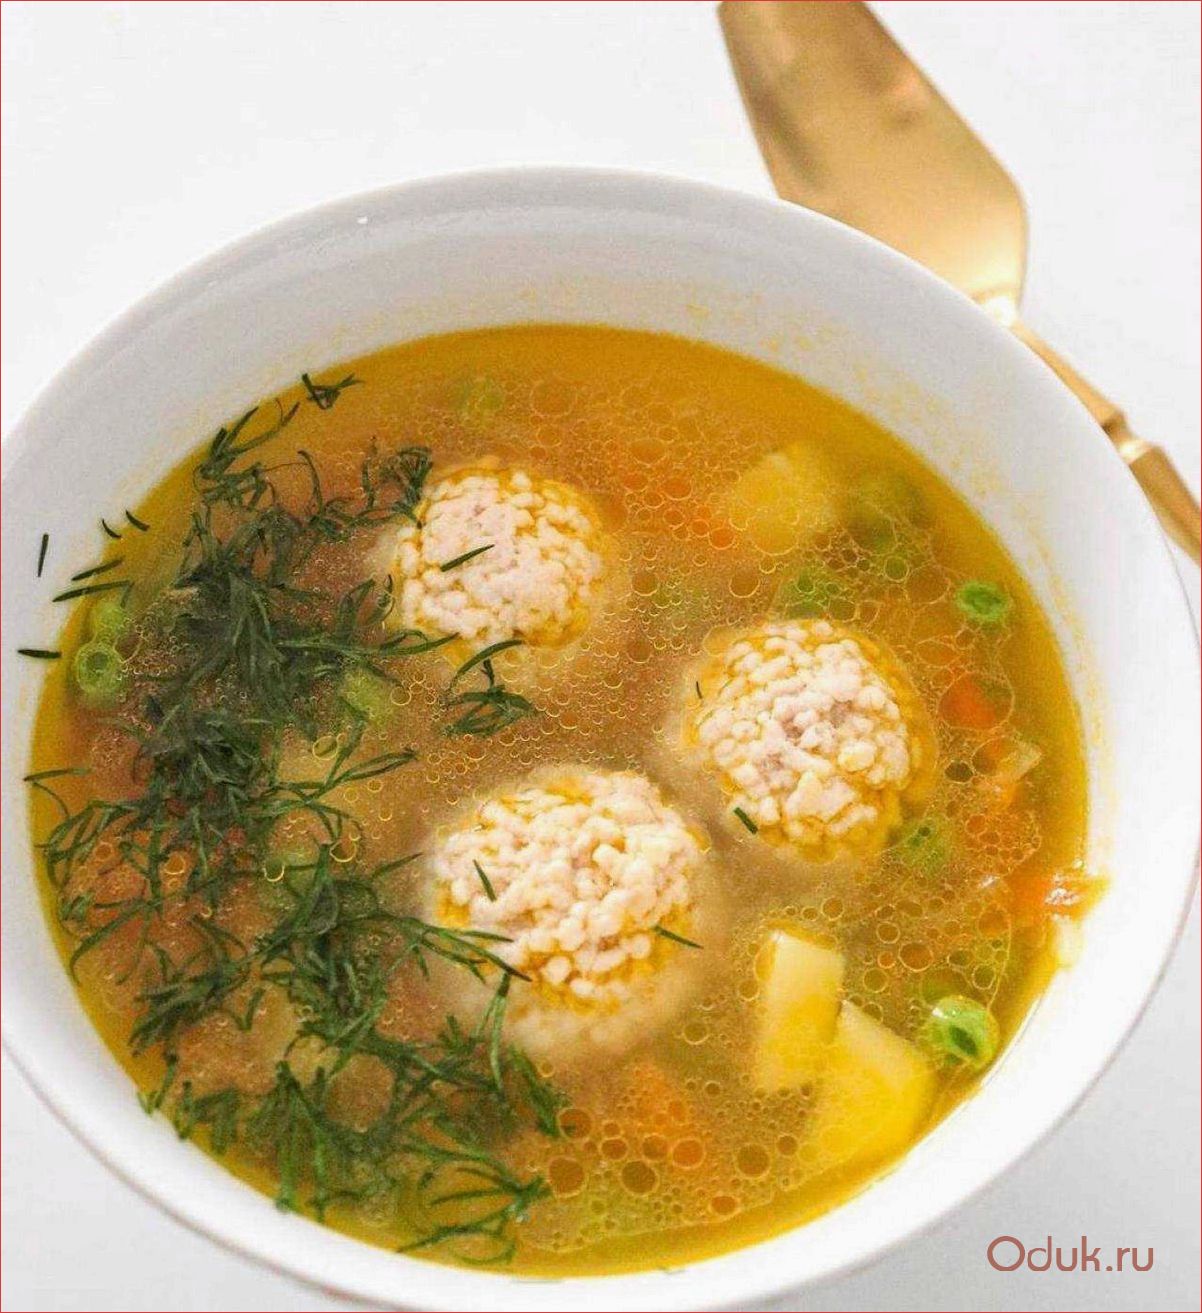 Фрикаделевый суп: рецепты приготовления и секреты успеха